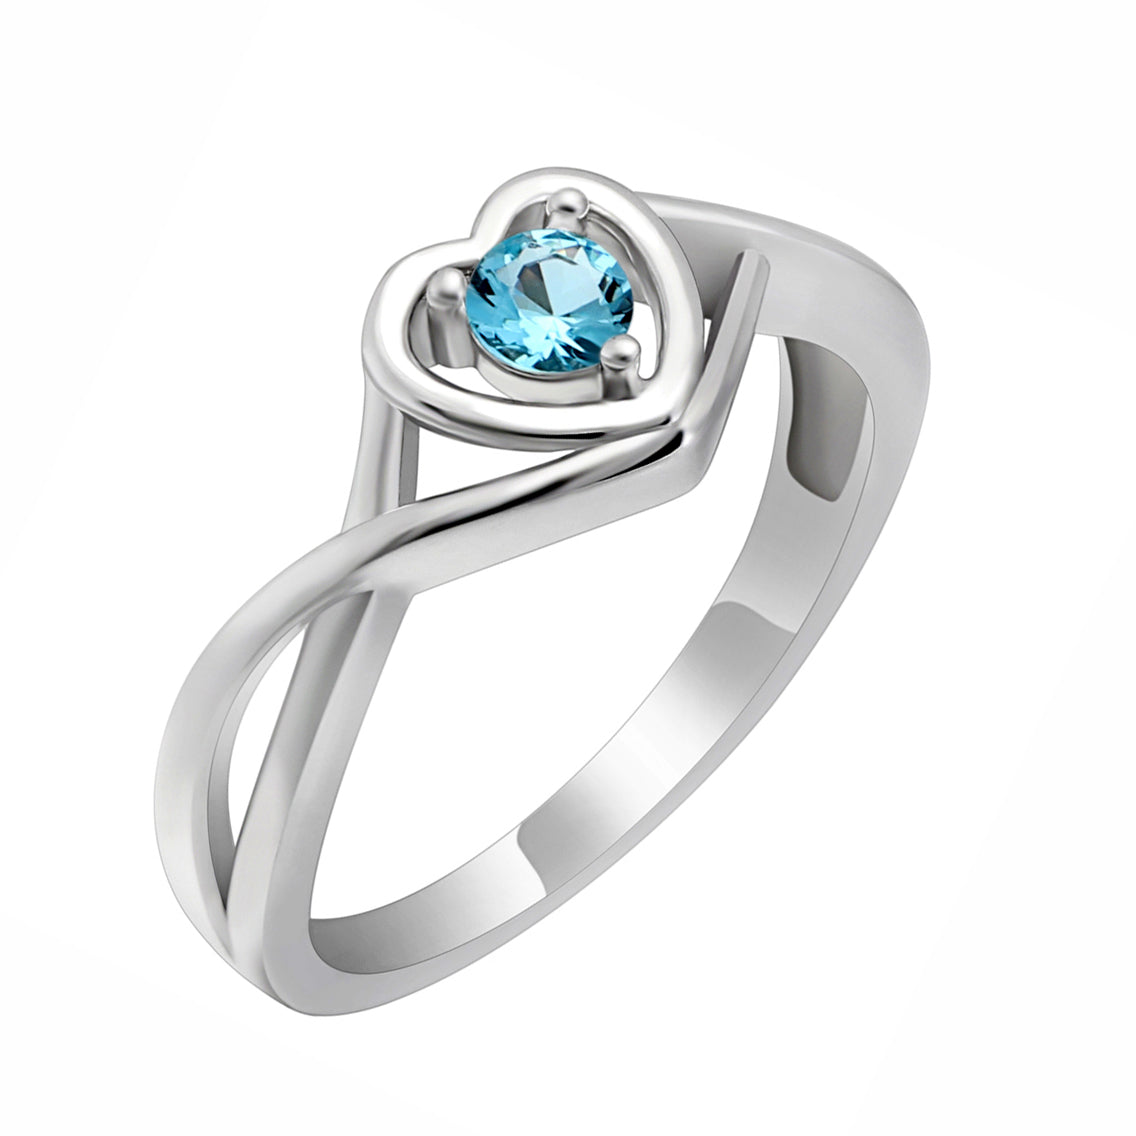 Christine Promise Ring Heart Engagement Women Silver Cz Ginger Lyne - March Light Blue,4